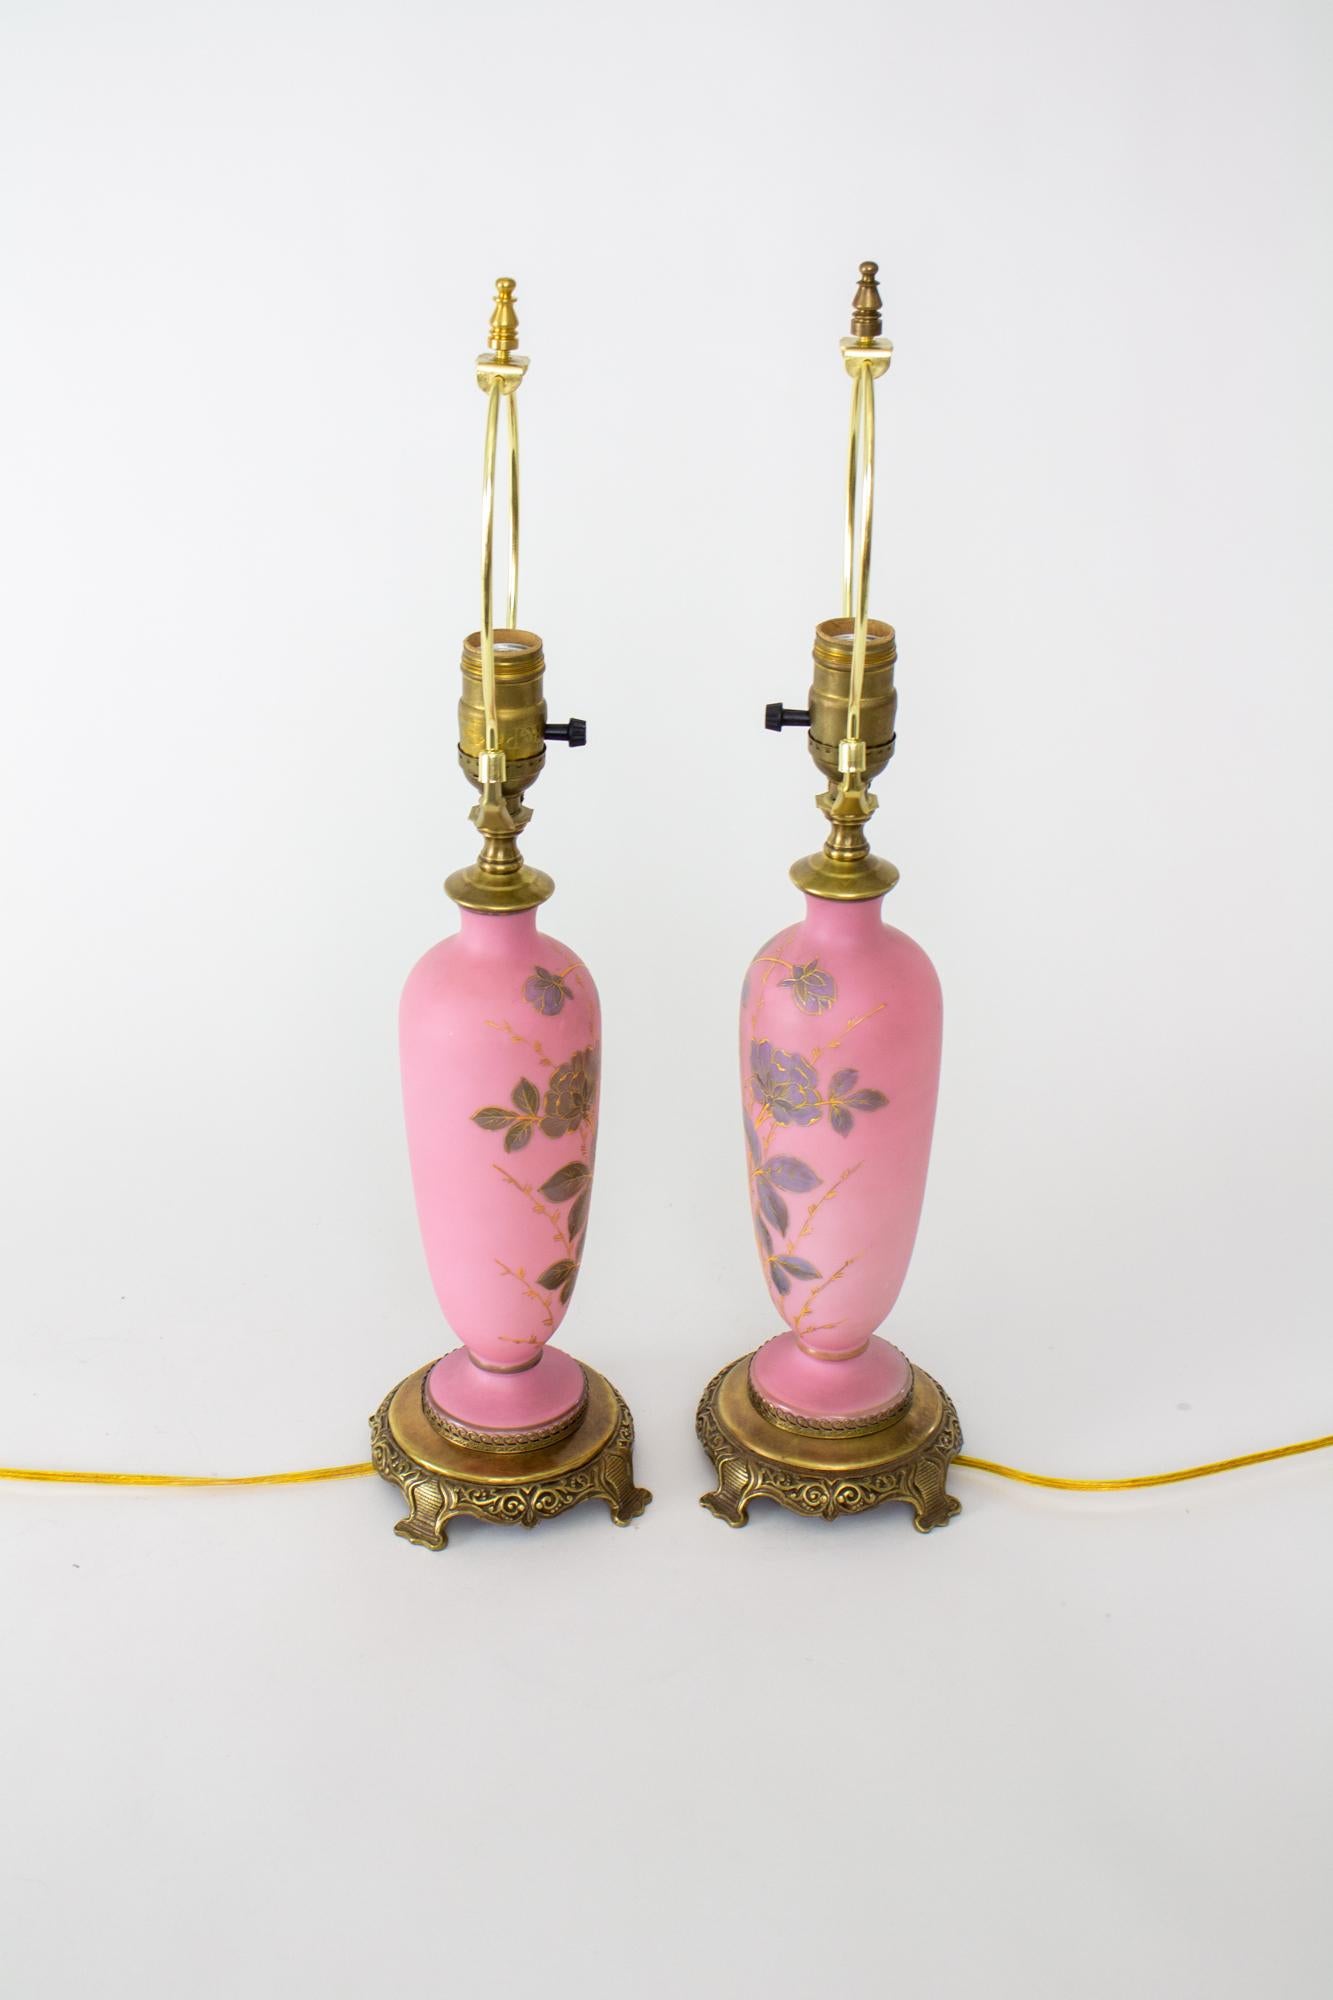 Österreichische rosa Tischlampen des späten 19. Jahrhunderts - ein Paar. Diese Lampen sind aus rosafarbenem Glas in Form einer Vase gefertigt. Sie sind mit lila gemalten Blumen mit erhabenen goldenen Details verziert. Ein dunkles, kalt bemaltes Band